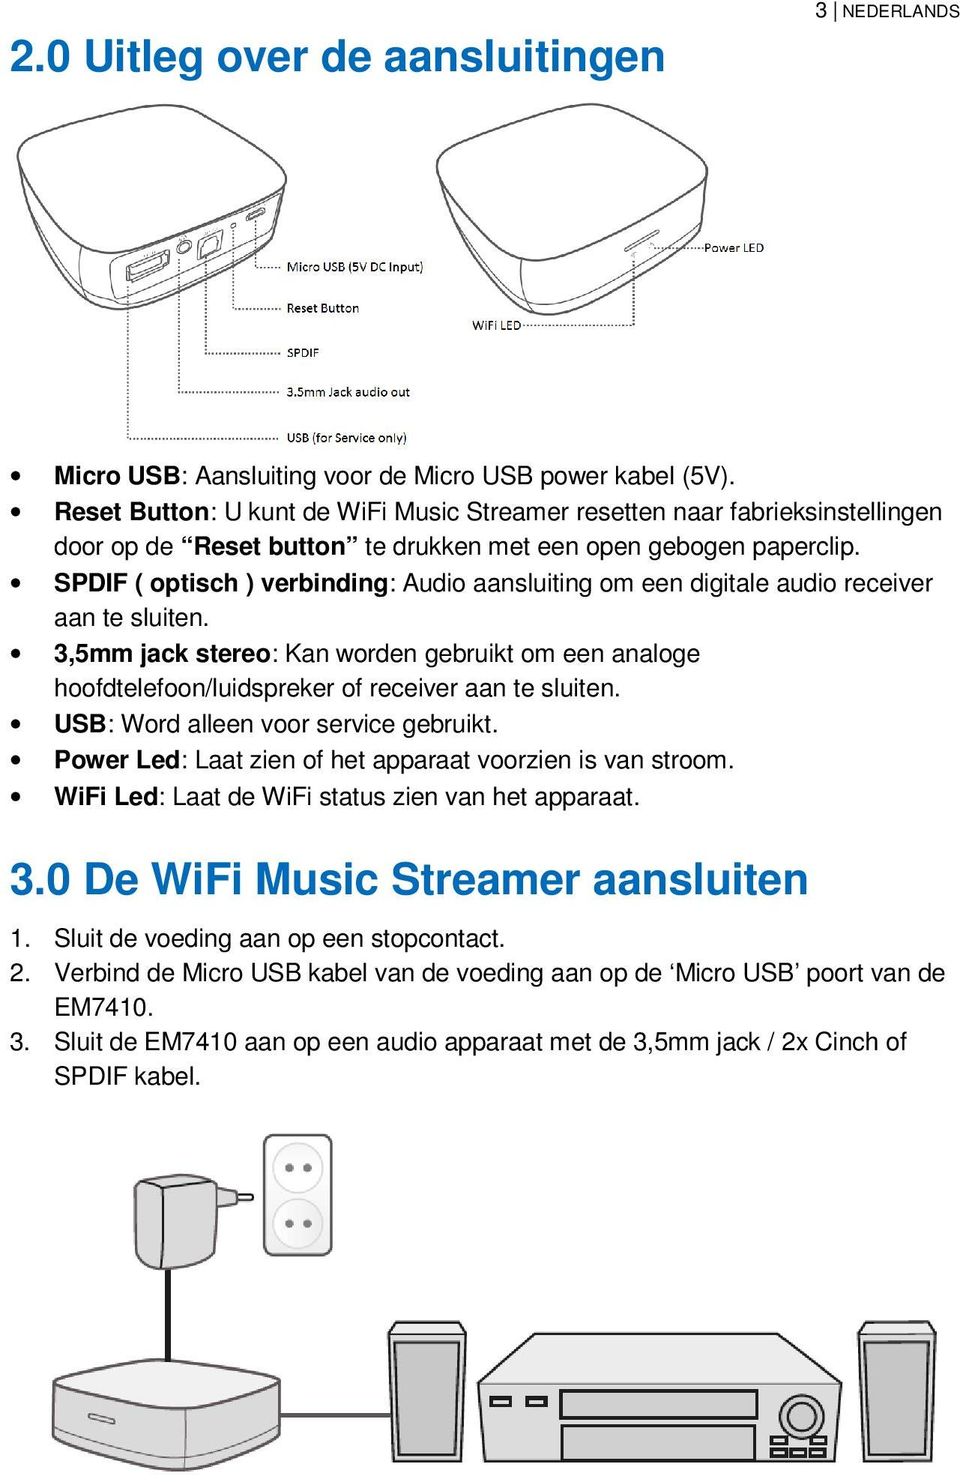 SPDIF ( optisch ) verbinding: Audio aansluiting om een digitale audio receiver aan te sluiten.